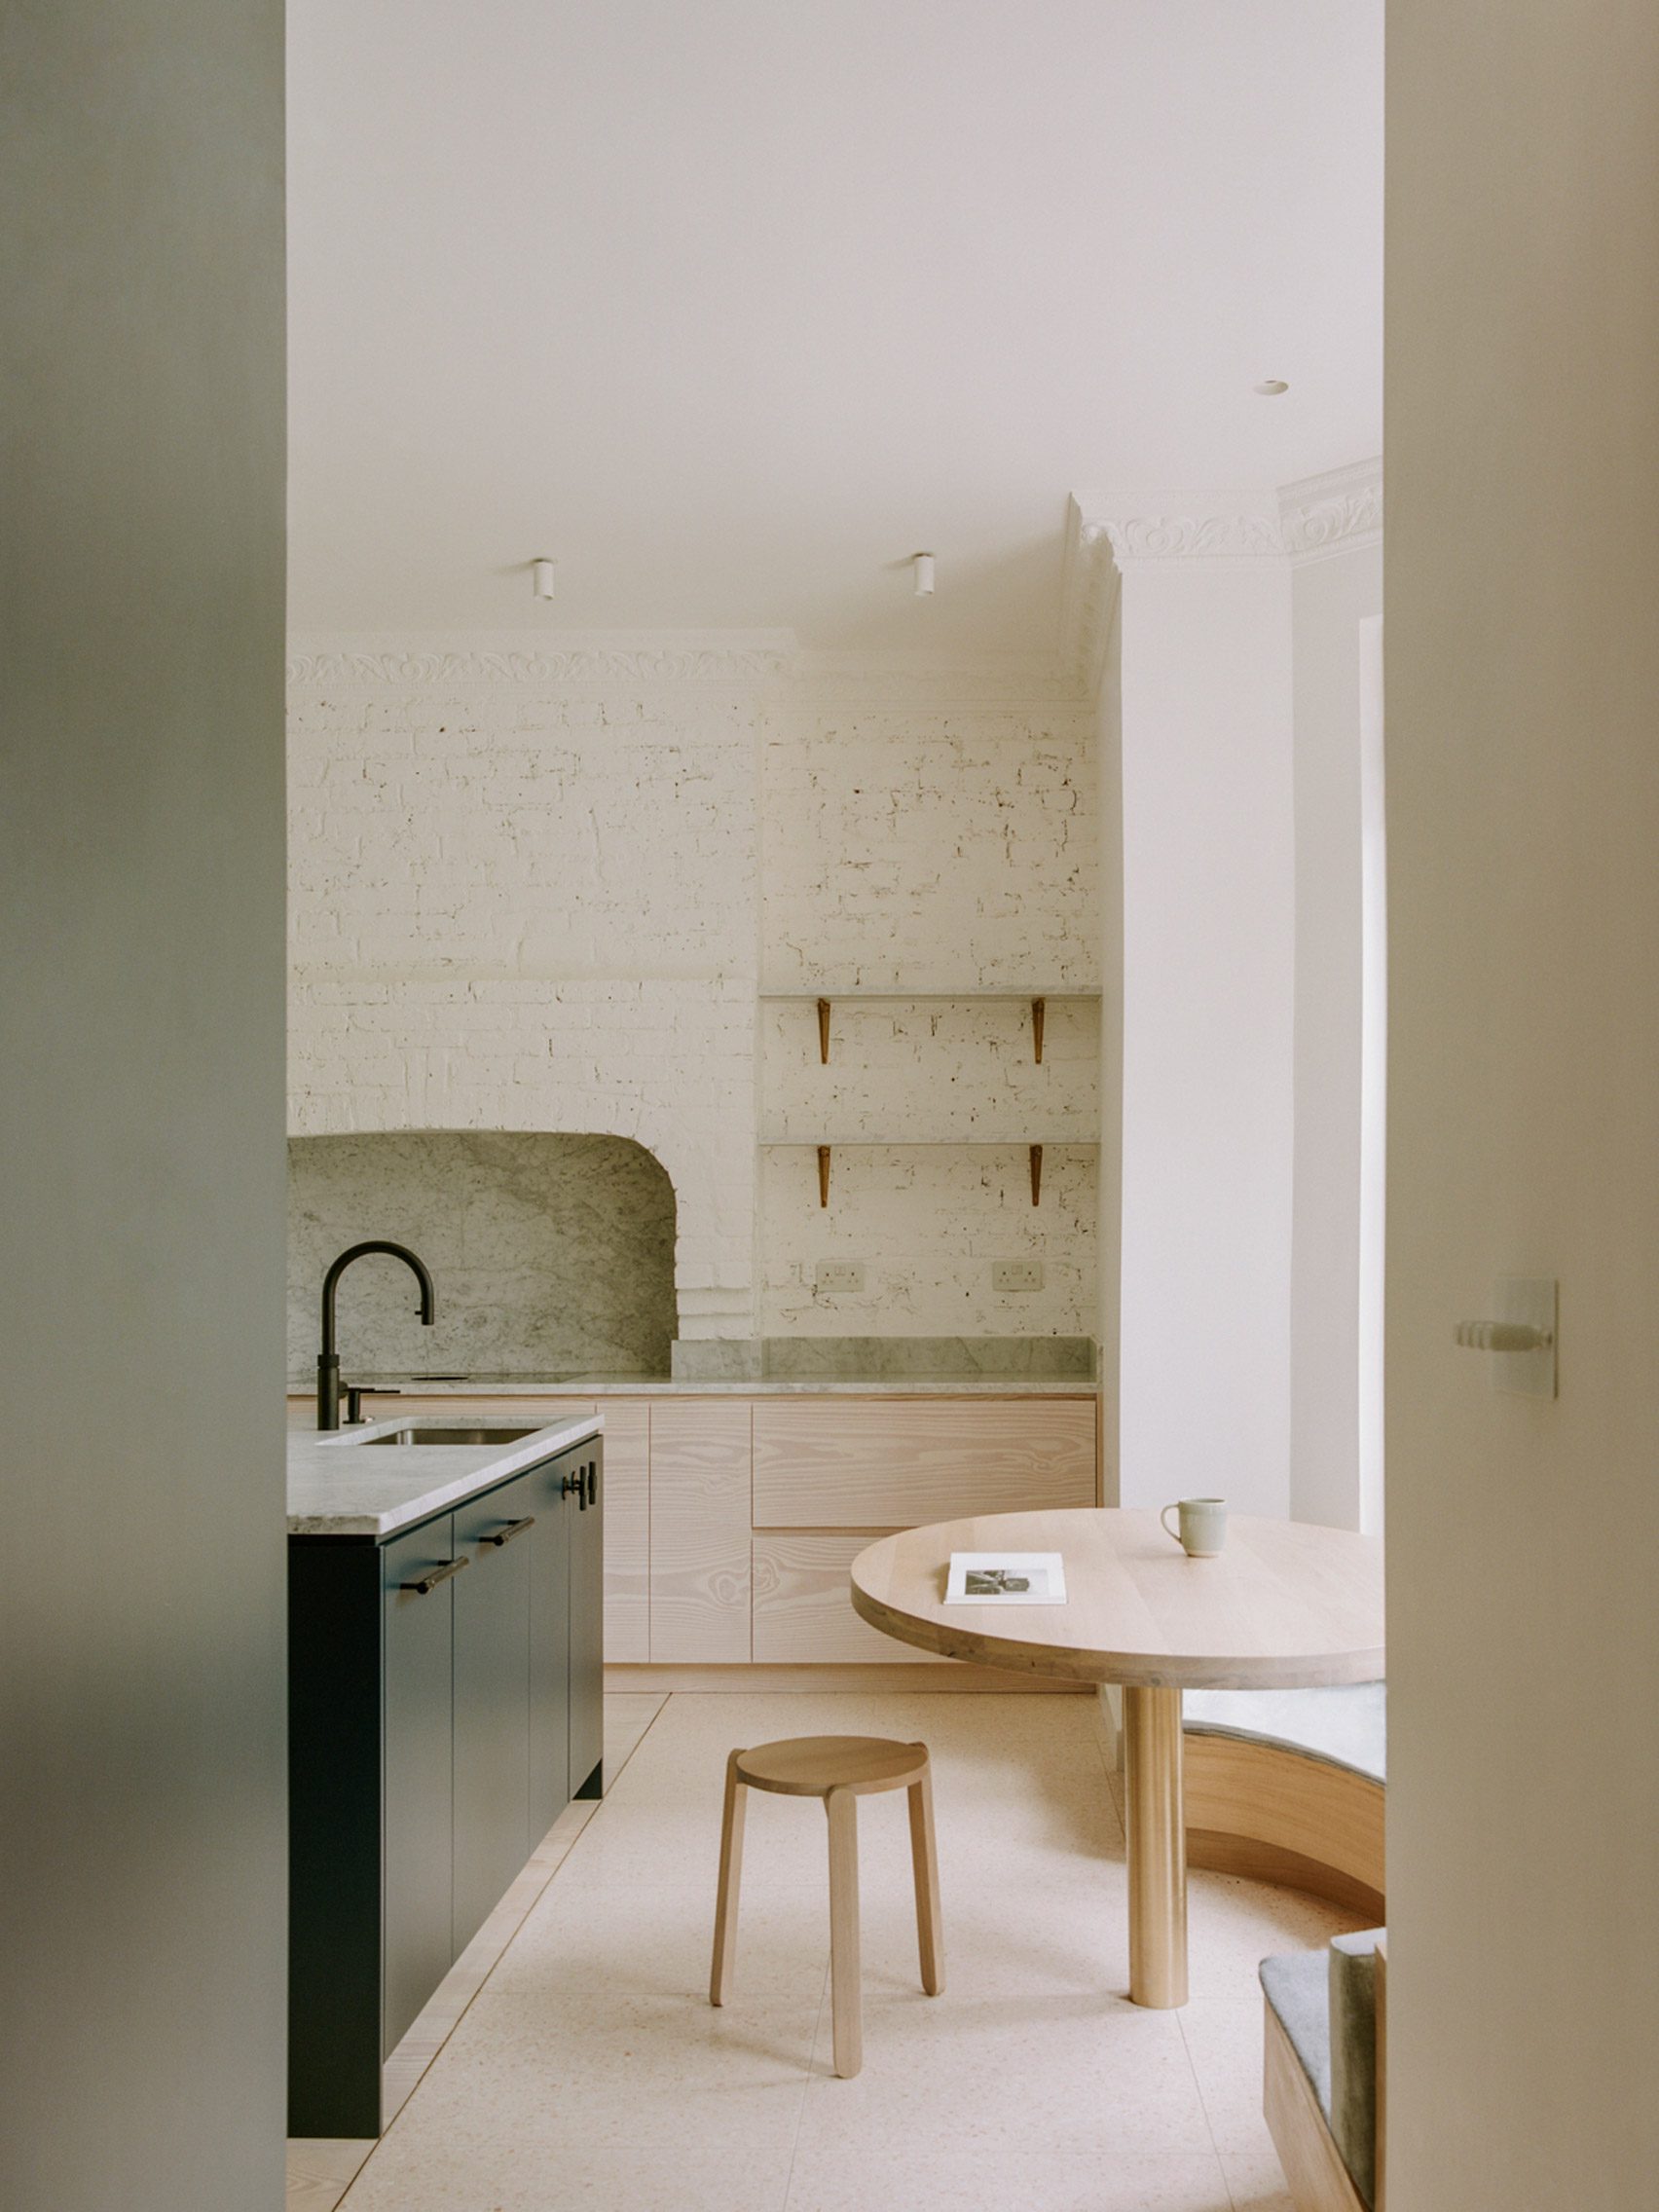 Kitchen with exposed brickwork walls by Neiheiser Argyros